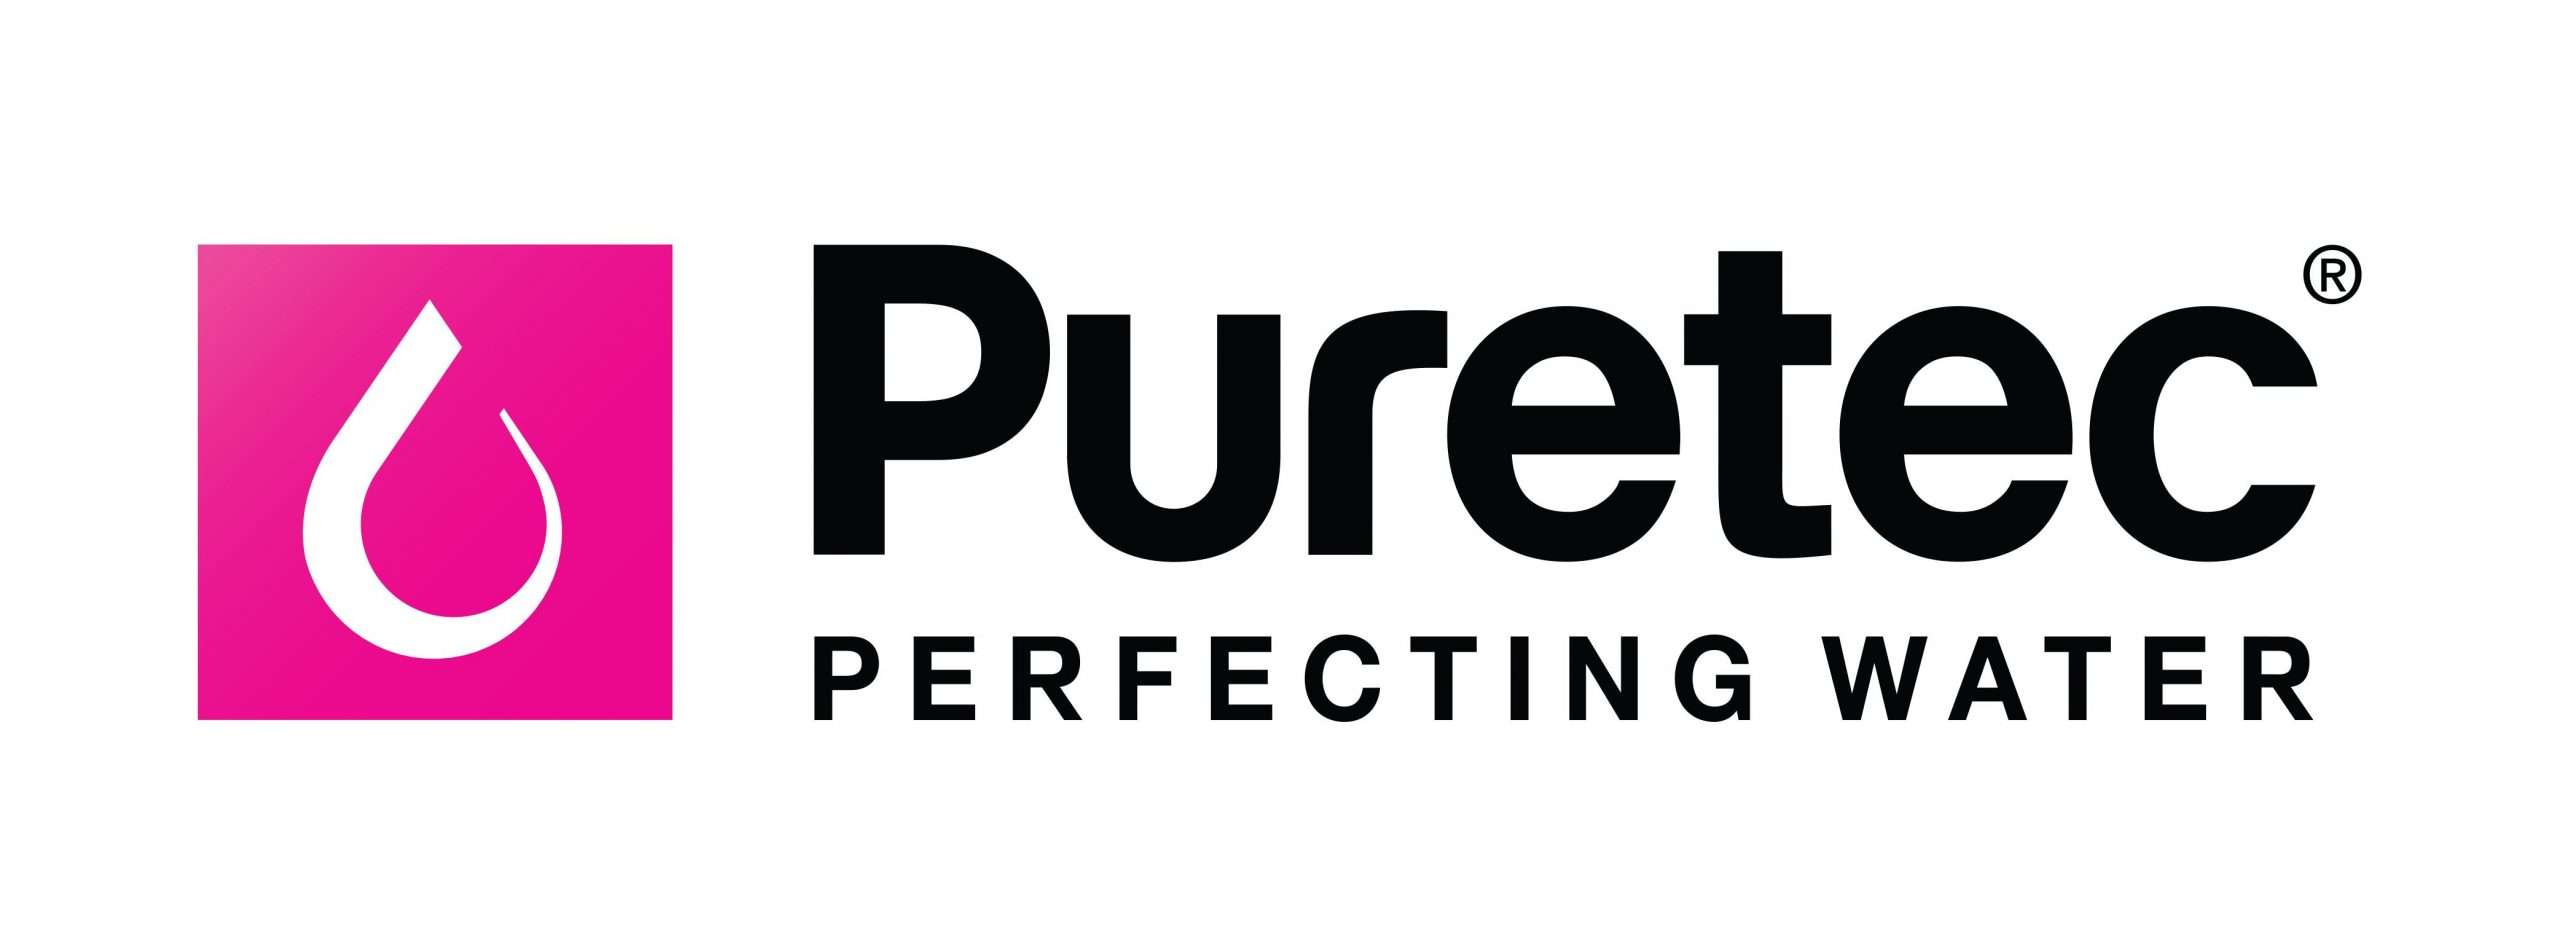 puretec logo